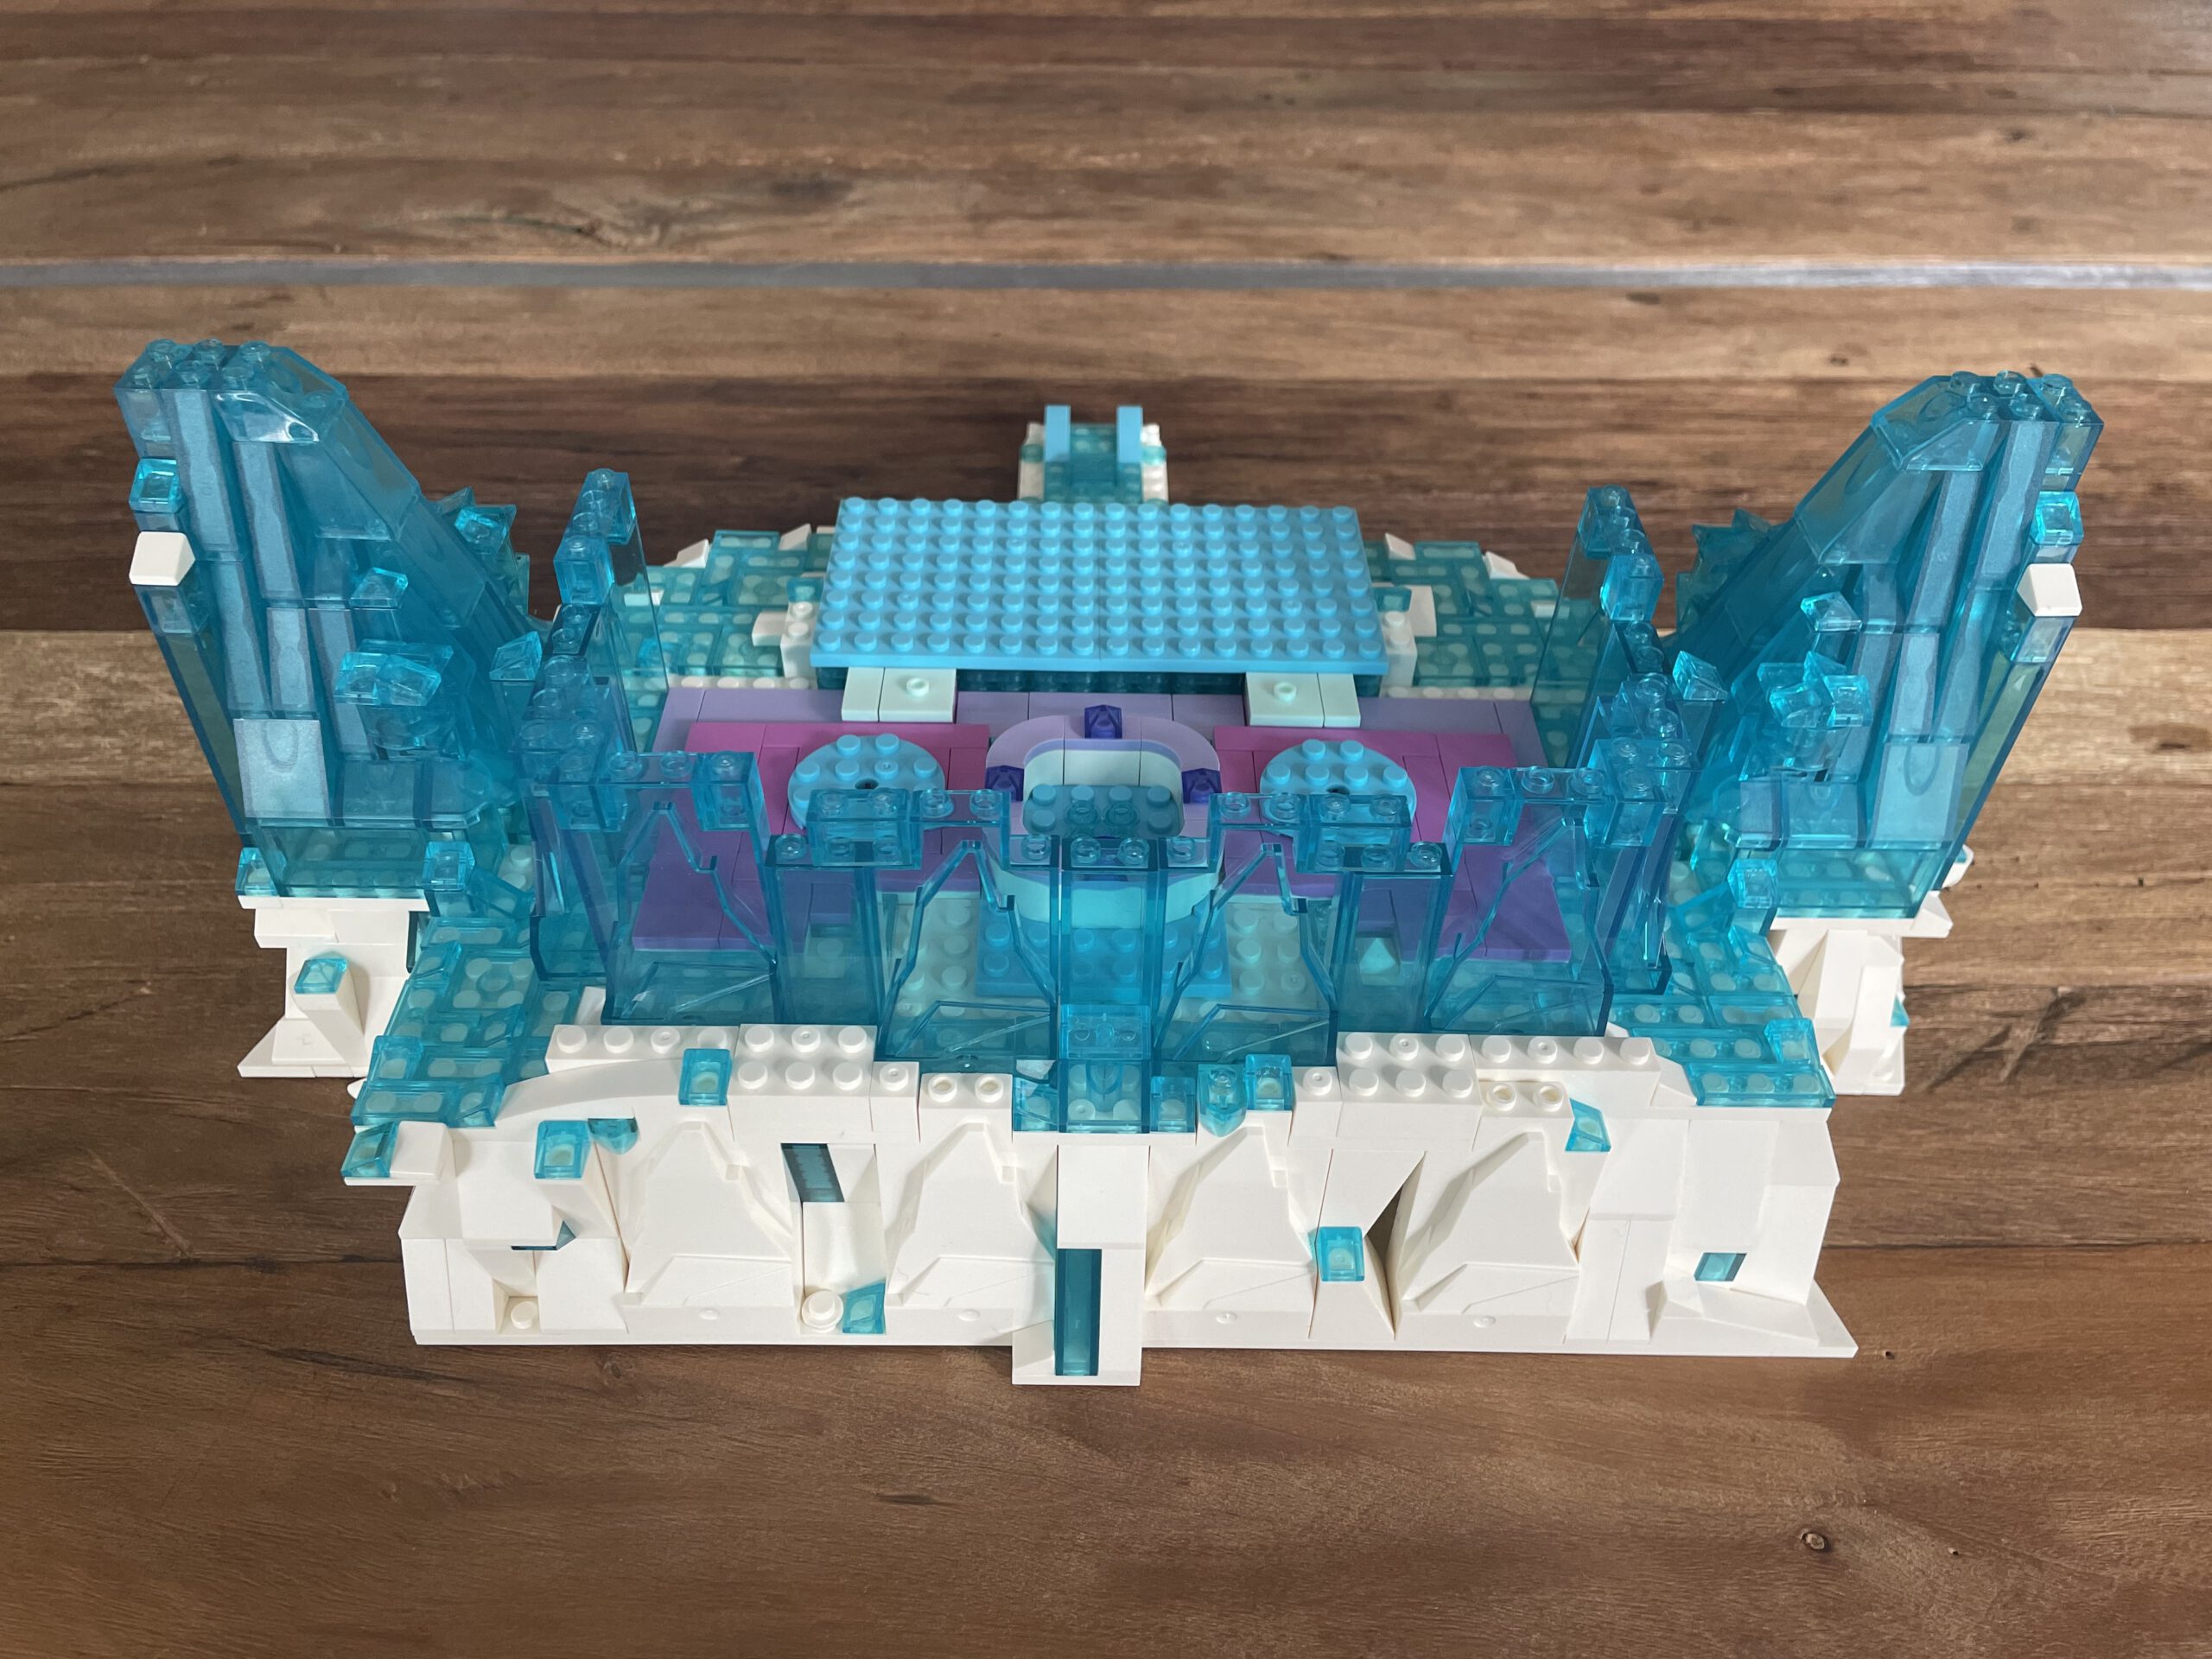 MJ 13002 Princess Ice Castle